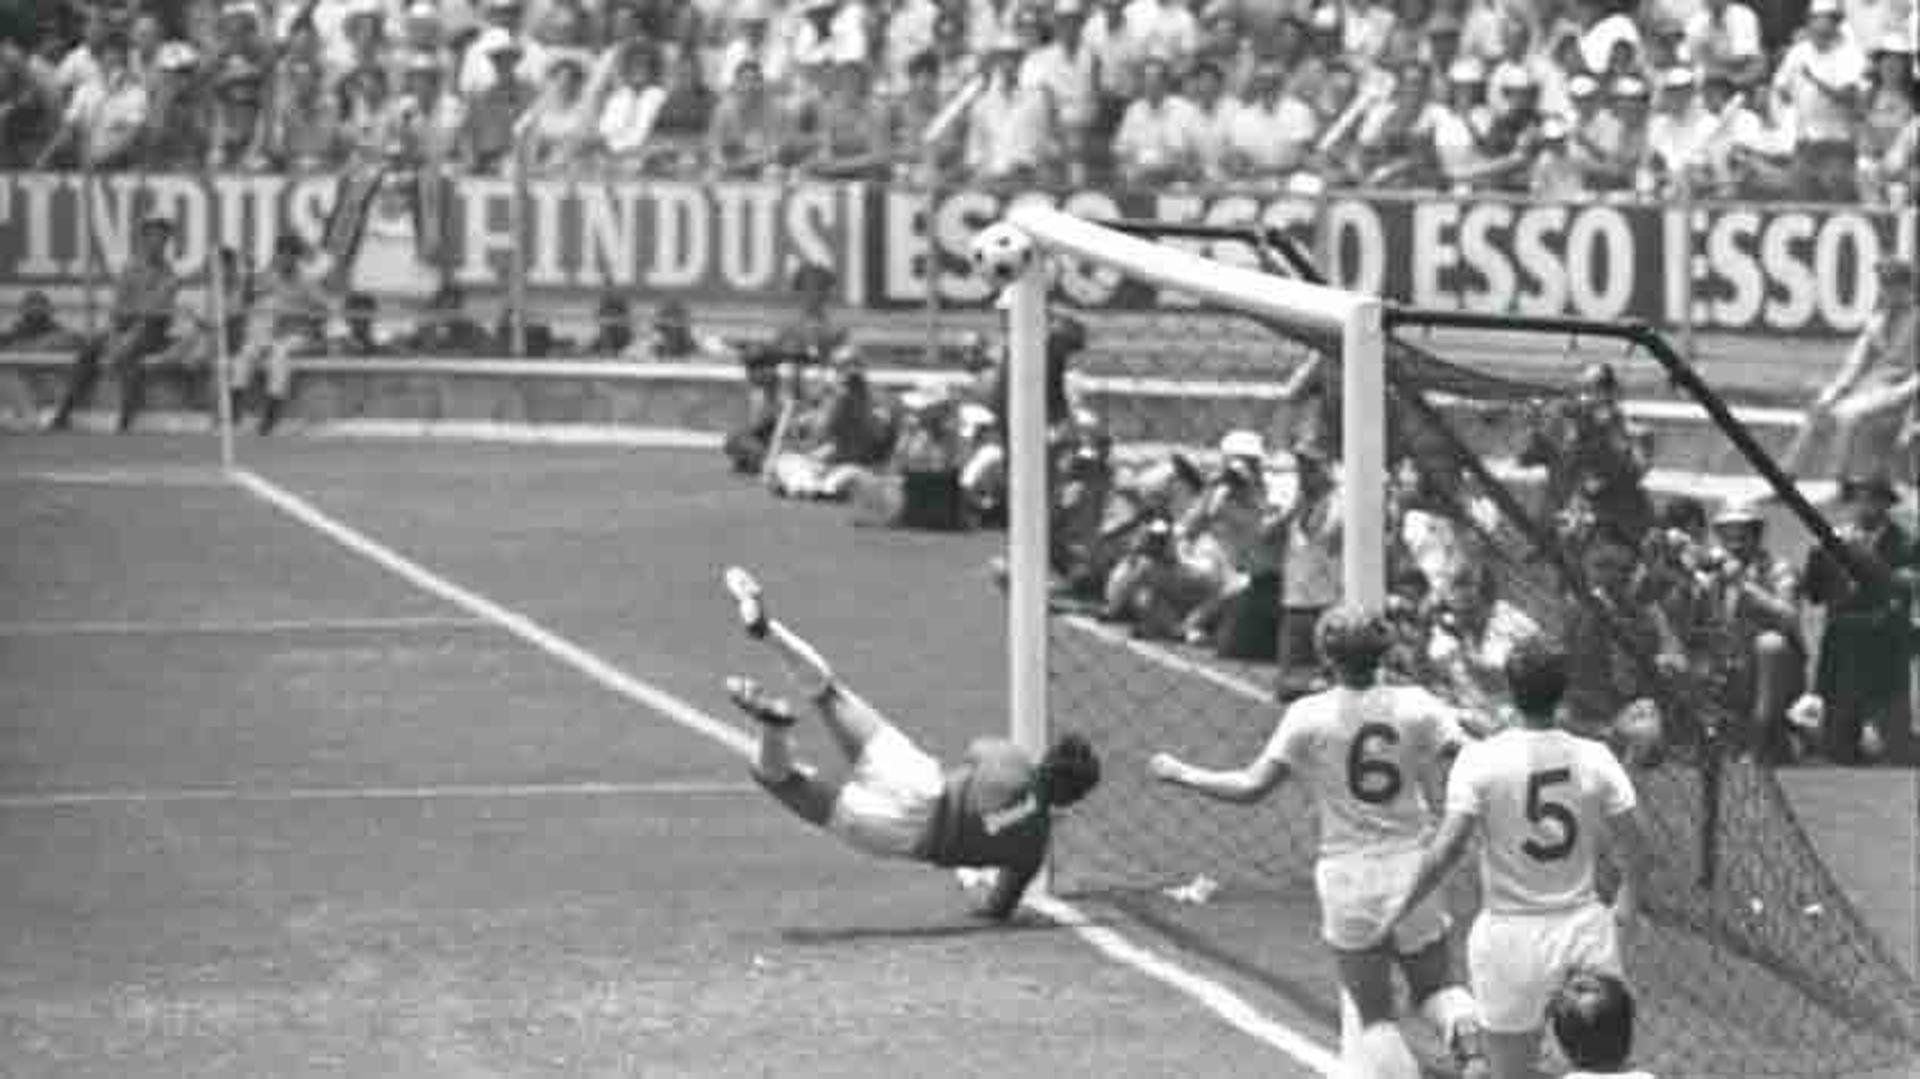 Copa de 1970 - Brasil 1 x 0 Inglaterra -&nbsp;Já na 1ª fase da Copa, duelo que reunia os dois últimos campeões mundiais, com grandes elencos. E dentro de campo eles não decepcionaram. As seleções exibiram um bom futebol e dois dos maiores craques da história proporcionaram um lance lendário. Jairzinho cruzou pela direita e Pelé subiu absoluto, testando firme para o chão e no canto da meta inglesa. Mas eis que surge o goleiro Gordon Banks para salvar e tirar a bola quase de dentro do gol, espalmando para escanteio. Na segunda etapa, Jairzinho, após linda jogada brasileira que passou por Tostão e Pelé, enfim venceu o grande arqueiro britânico para dar a vitória ao Brasil. <br>